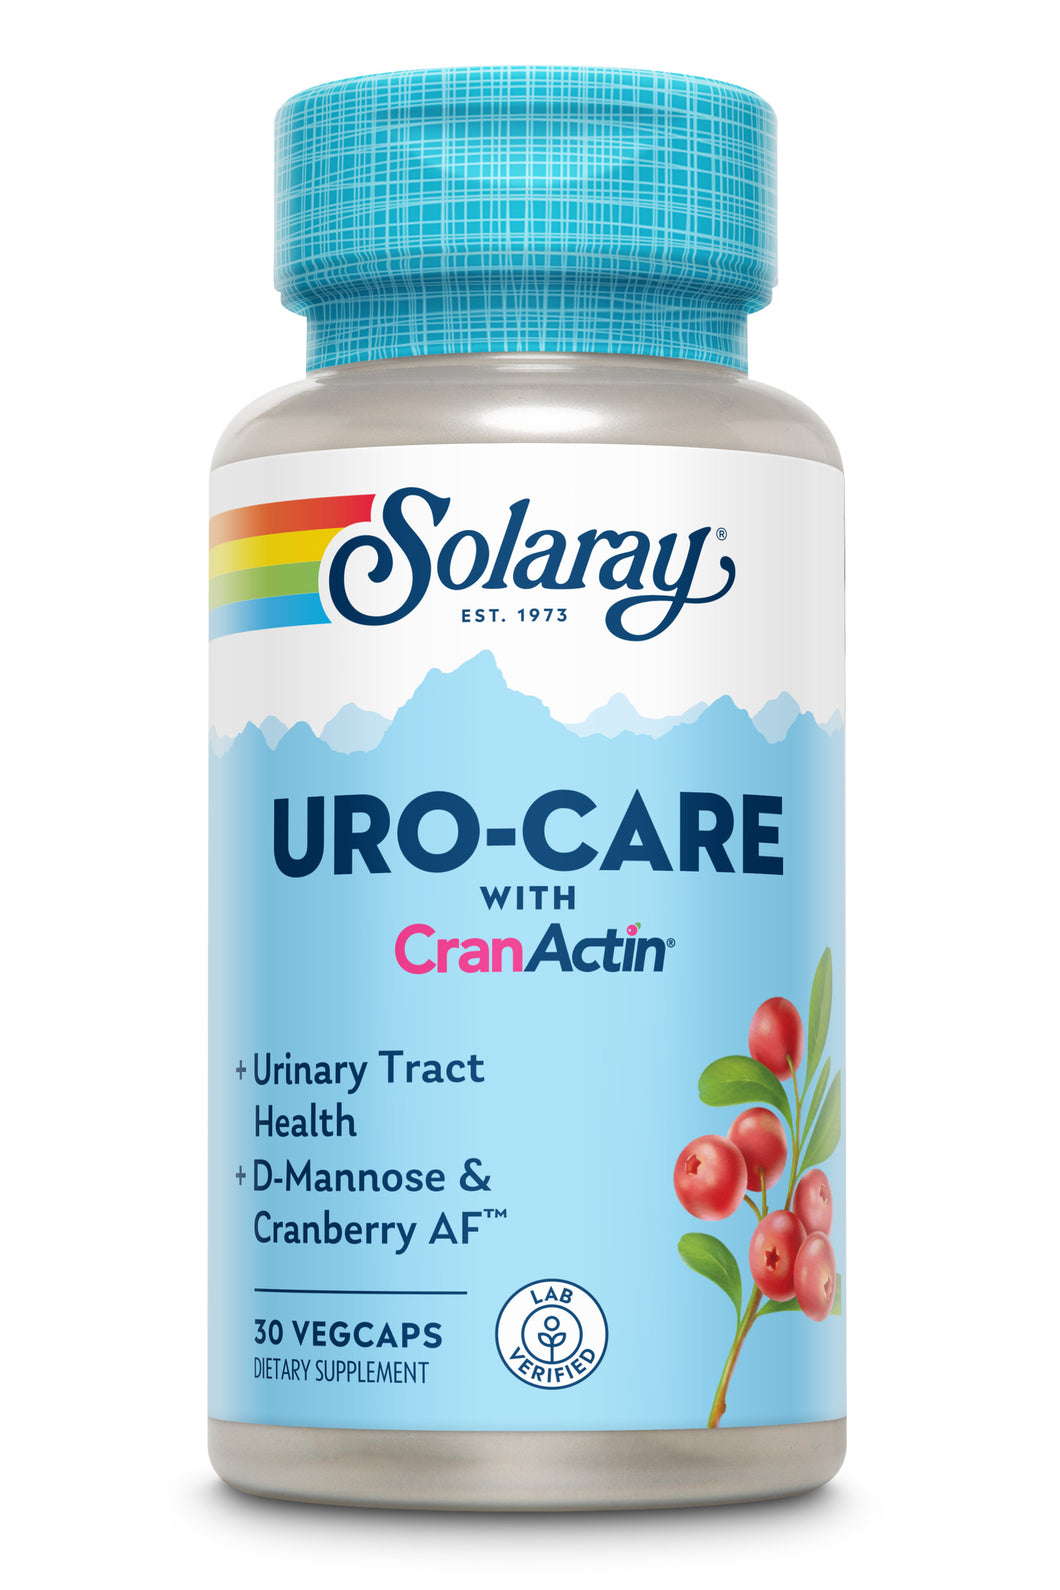 Uro-Care with CranActin®